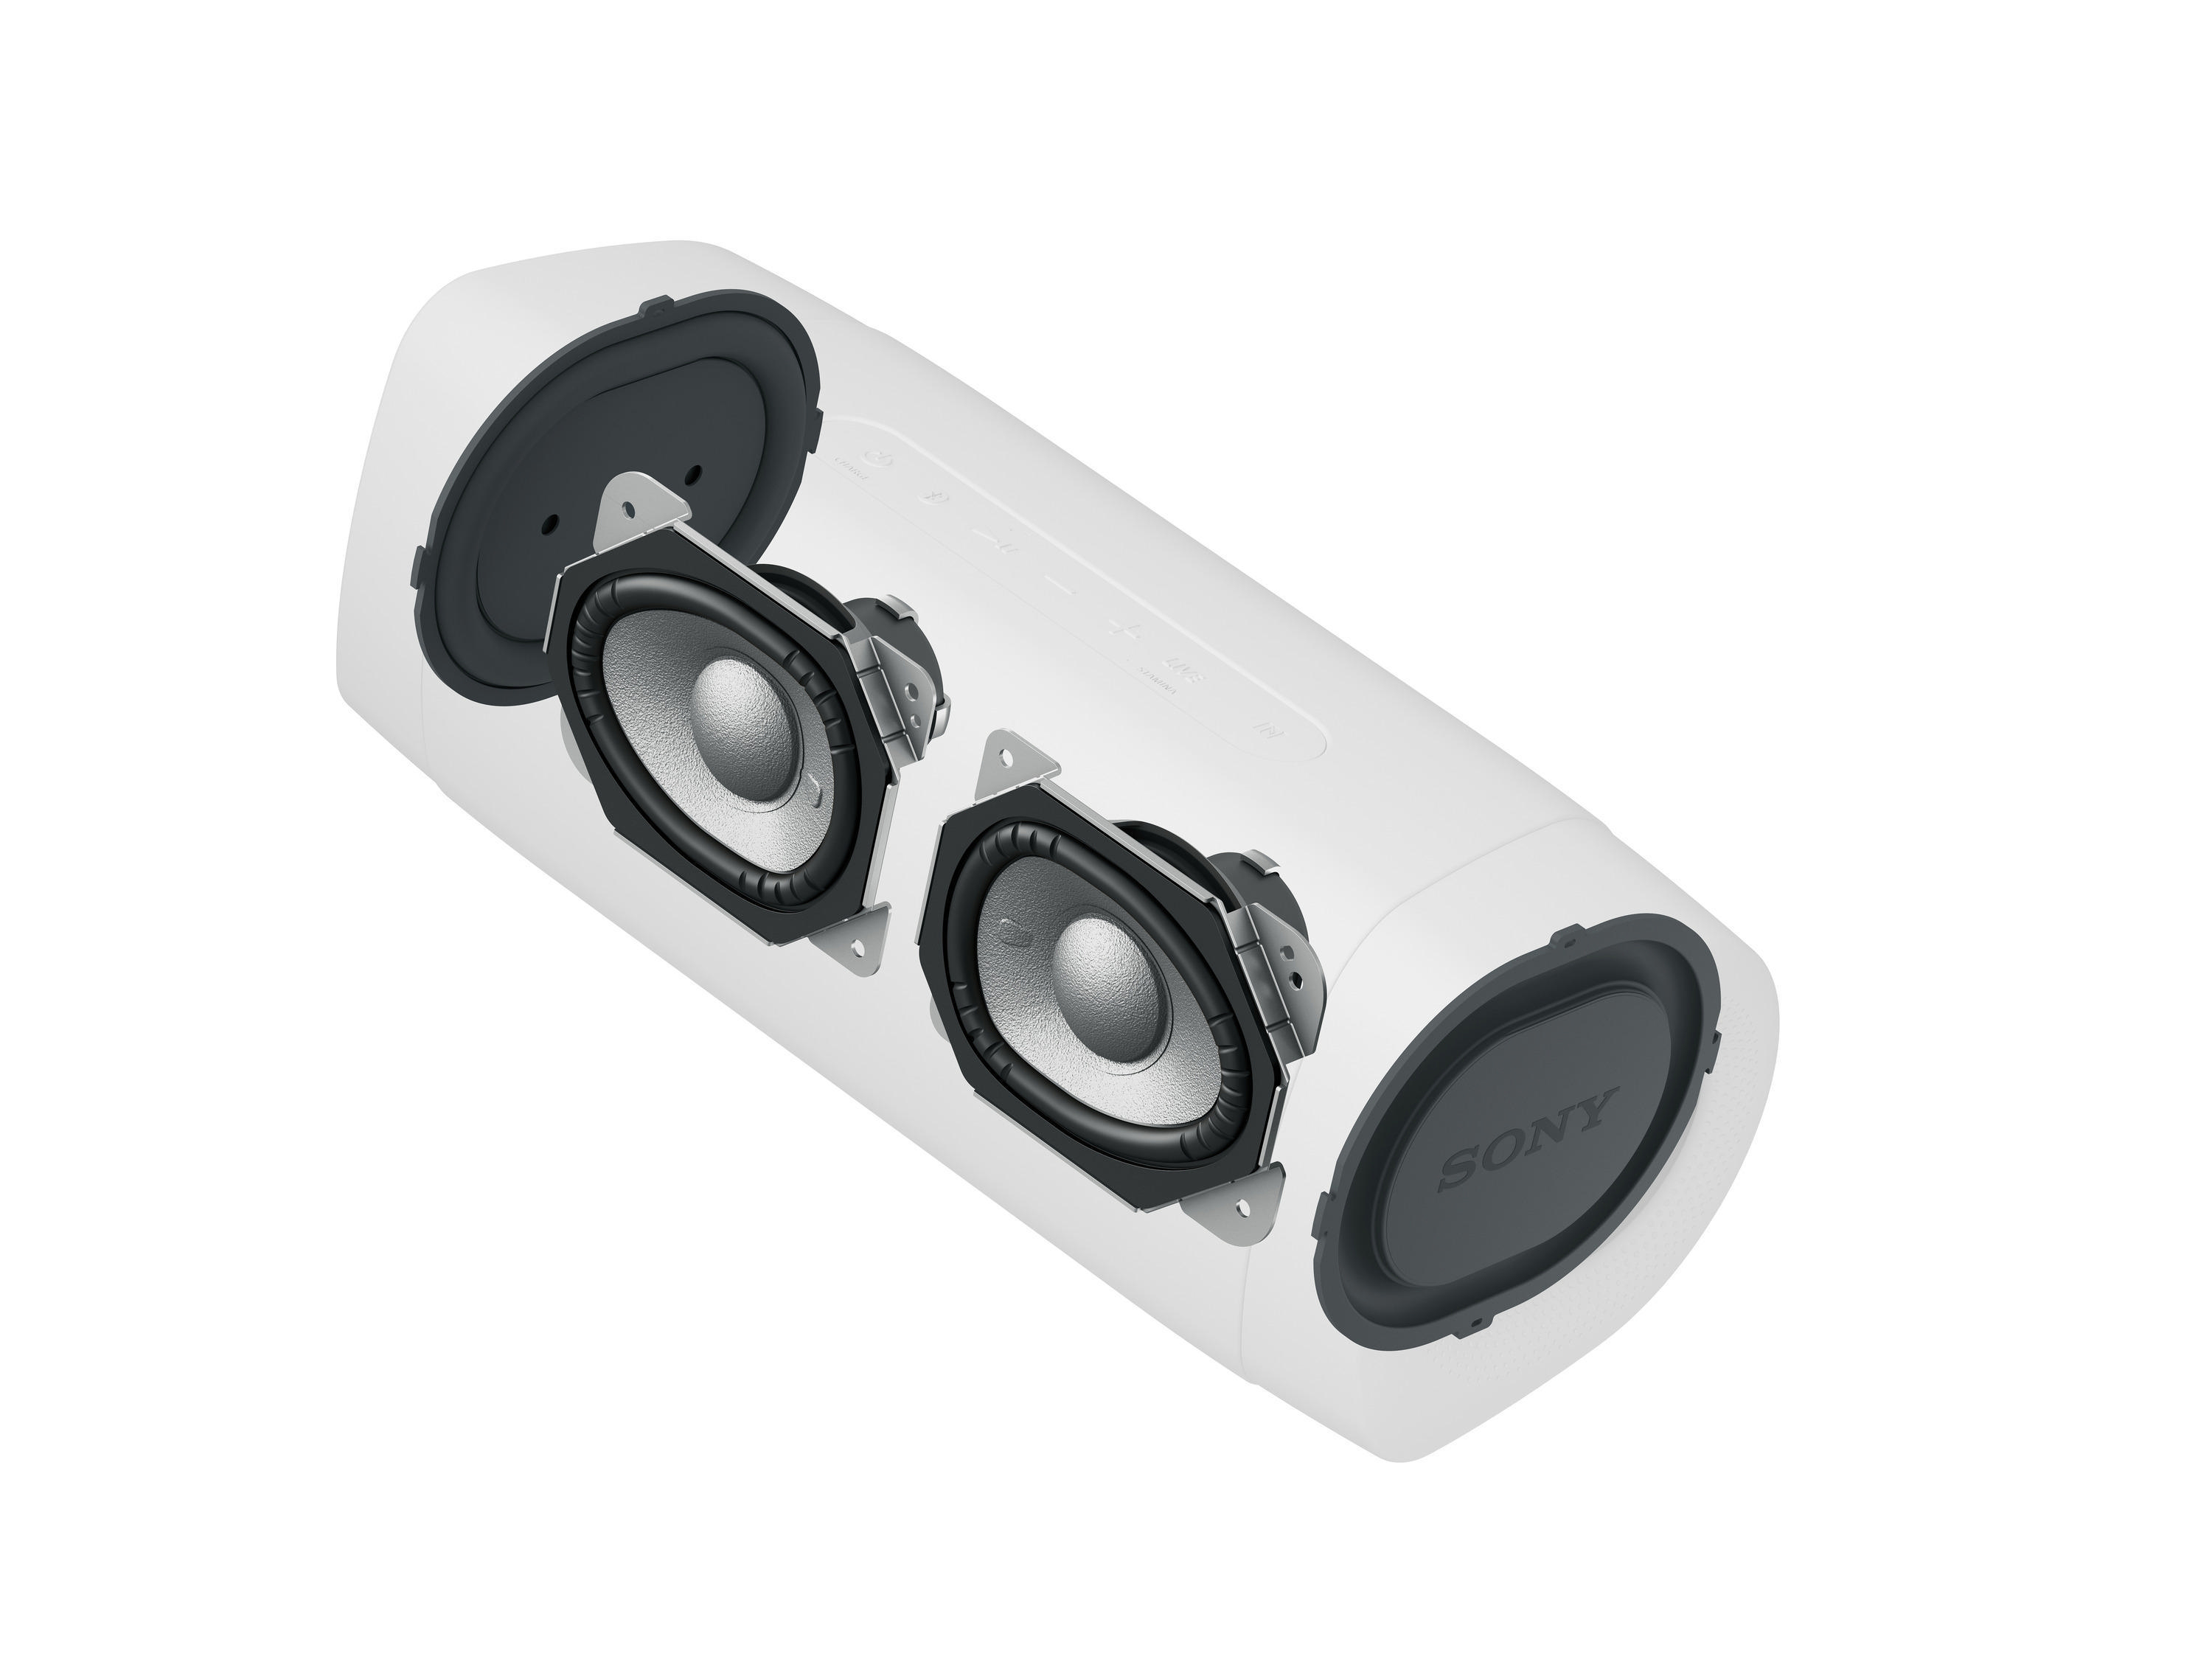 SONY kabellos, Bluetooth BASS tragbar, Lautsprecher, EXTRA Wasserfest Beige, Lautsprecherbeleuchtung, SRS-XB33